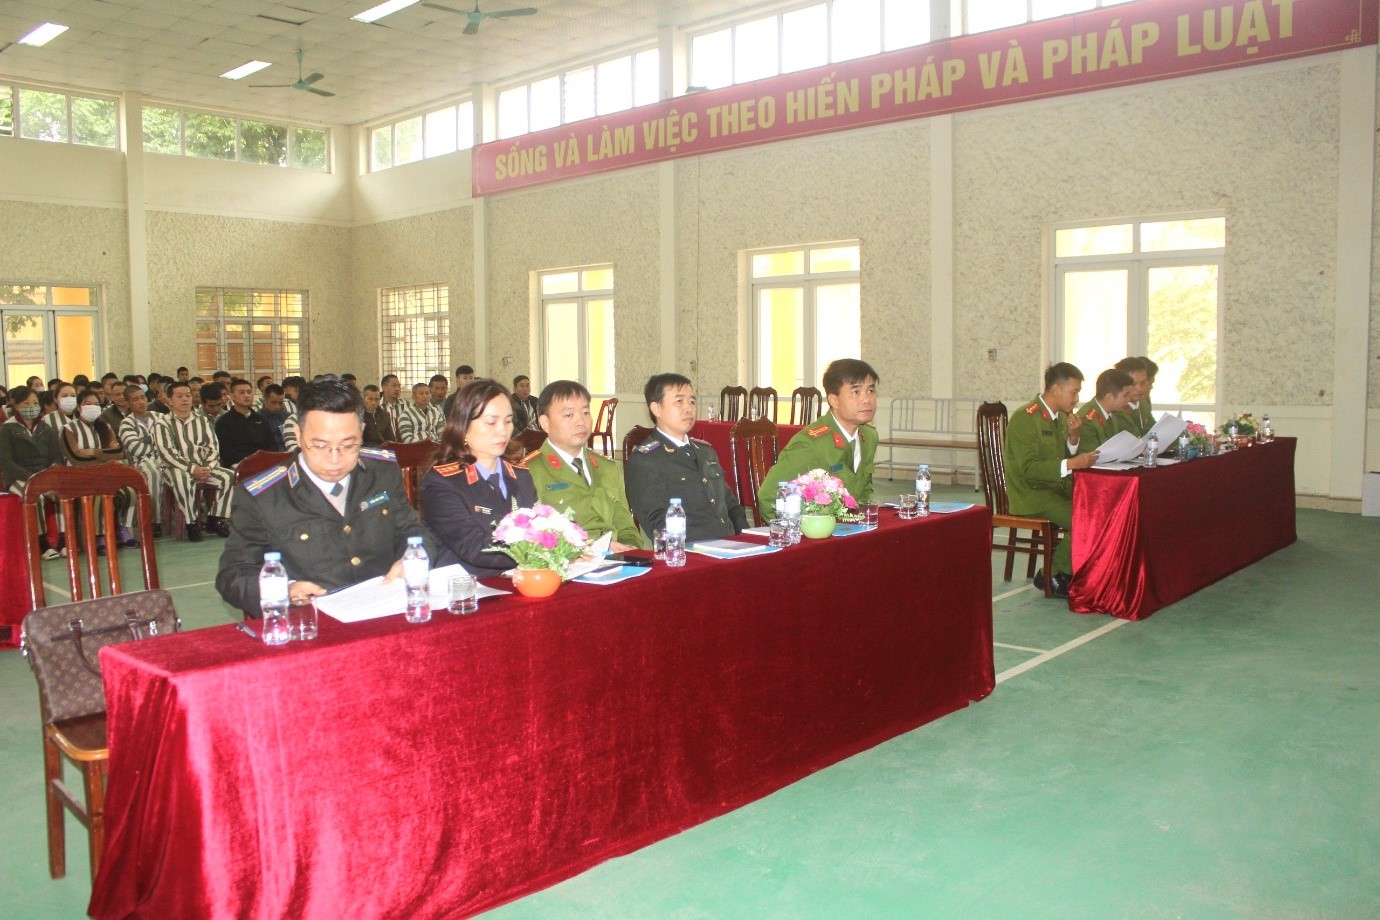 Cục Thi hành án dân sự tỉnh Lạng Sơn phối hợp với Trại Tạm giam Công an tỉnh Lạng Sơn tổ chức tuyên truyền, phổ biến, giáo dục pháp luật về Thi hành án dân sự và các văn bản có liên quan cho các phạm nhân